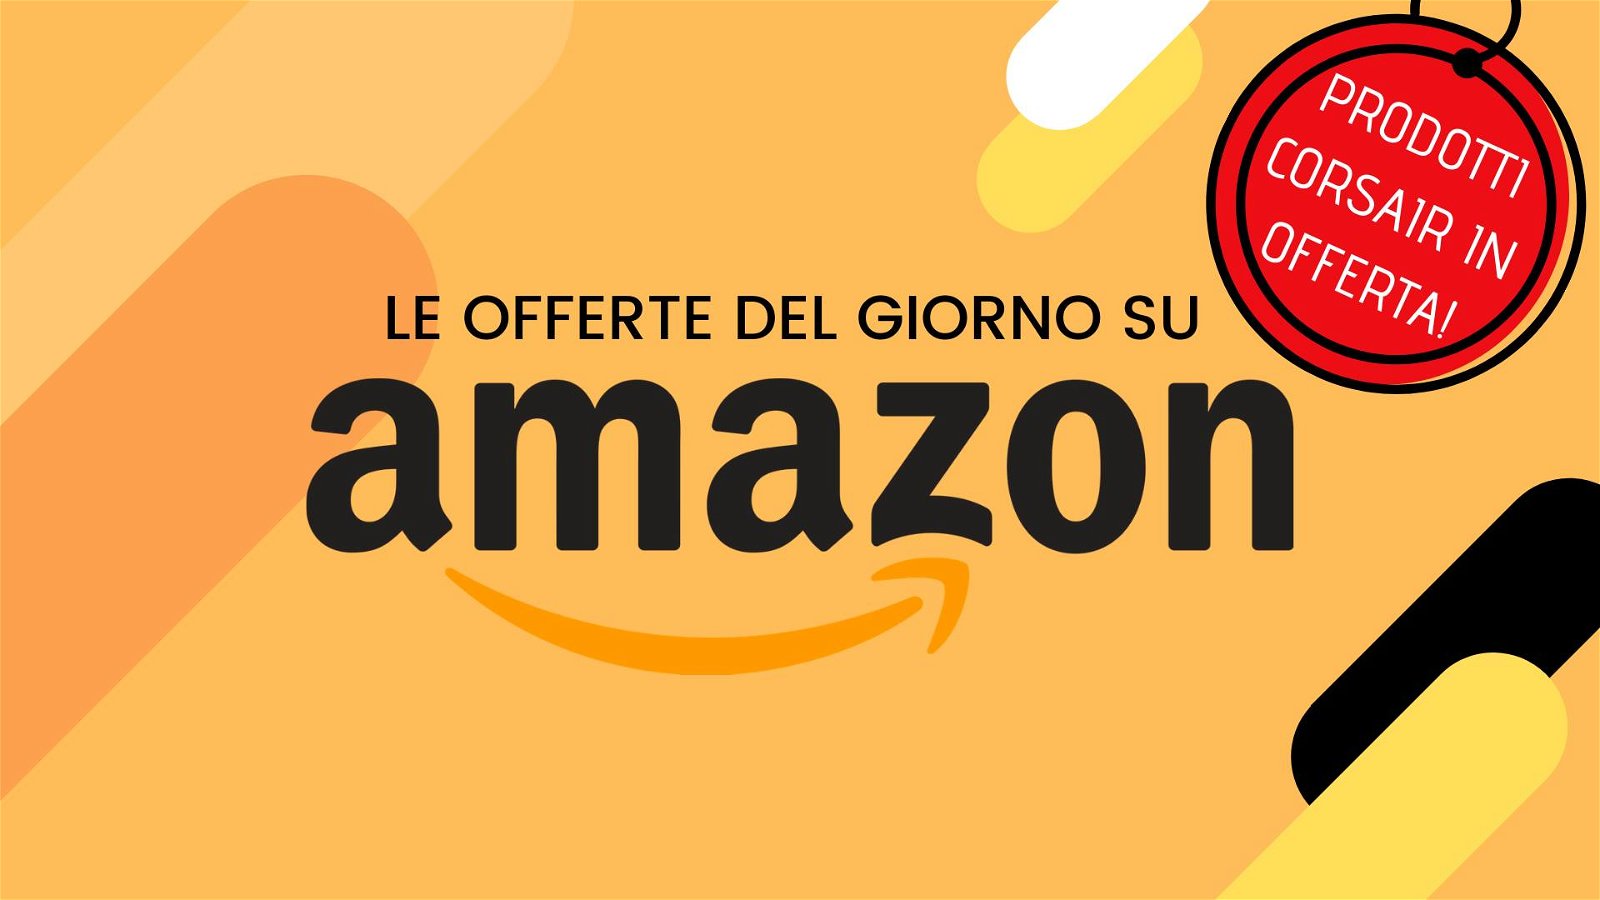 Immagine di Offerte del giorno Amazon: prodotti Corsair in offerta e non solo!